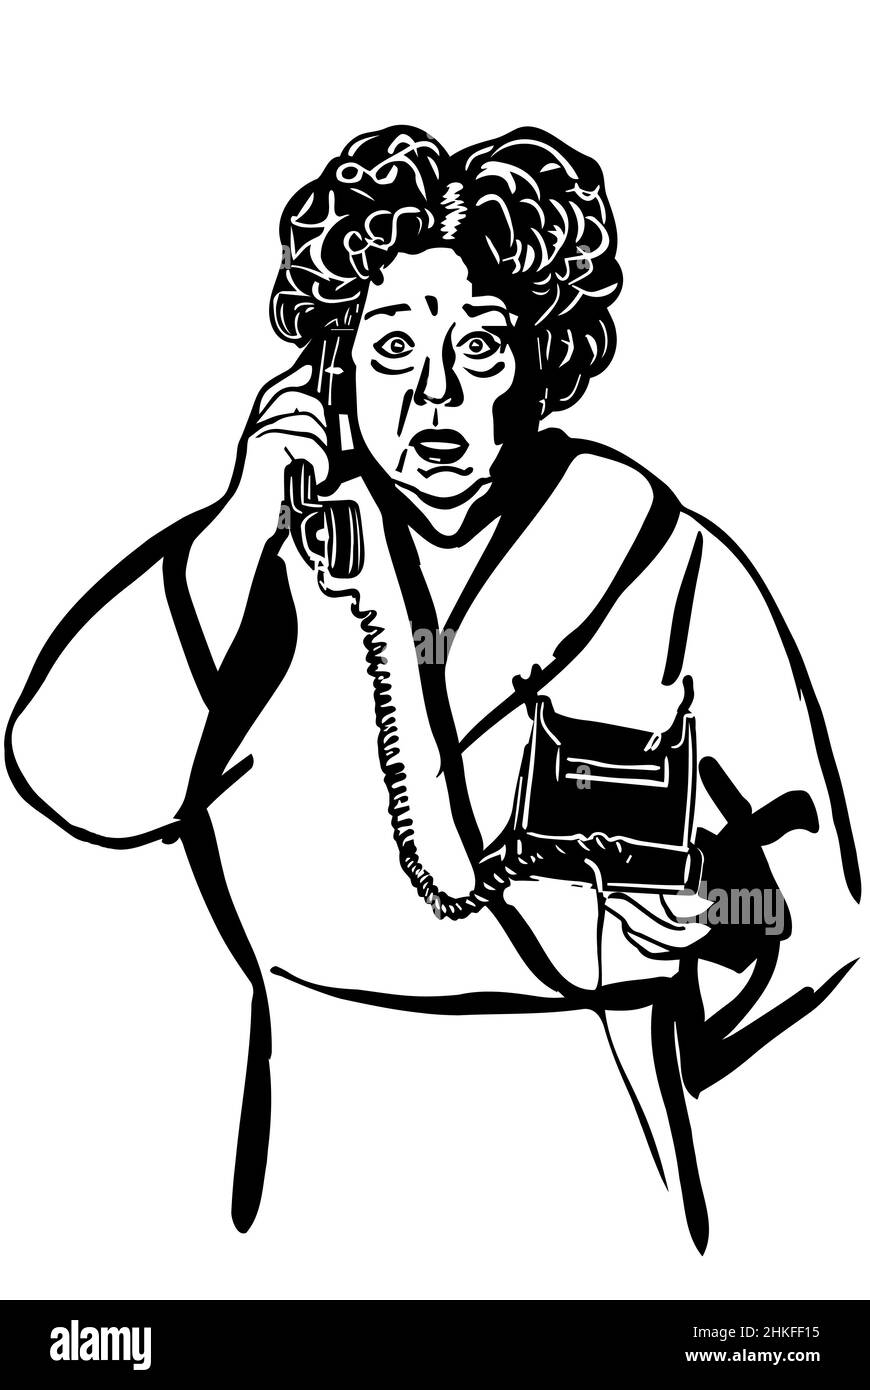 Schwarz-Weiß-Vektorskizze einer älteren Frau, die am Telefon spricht Stockfoto